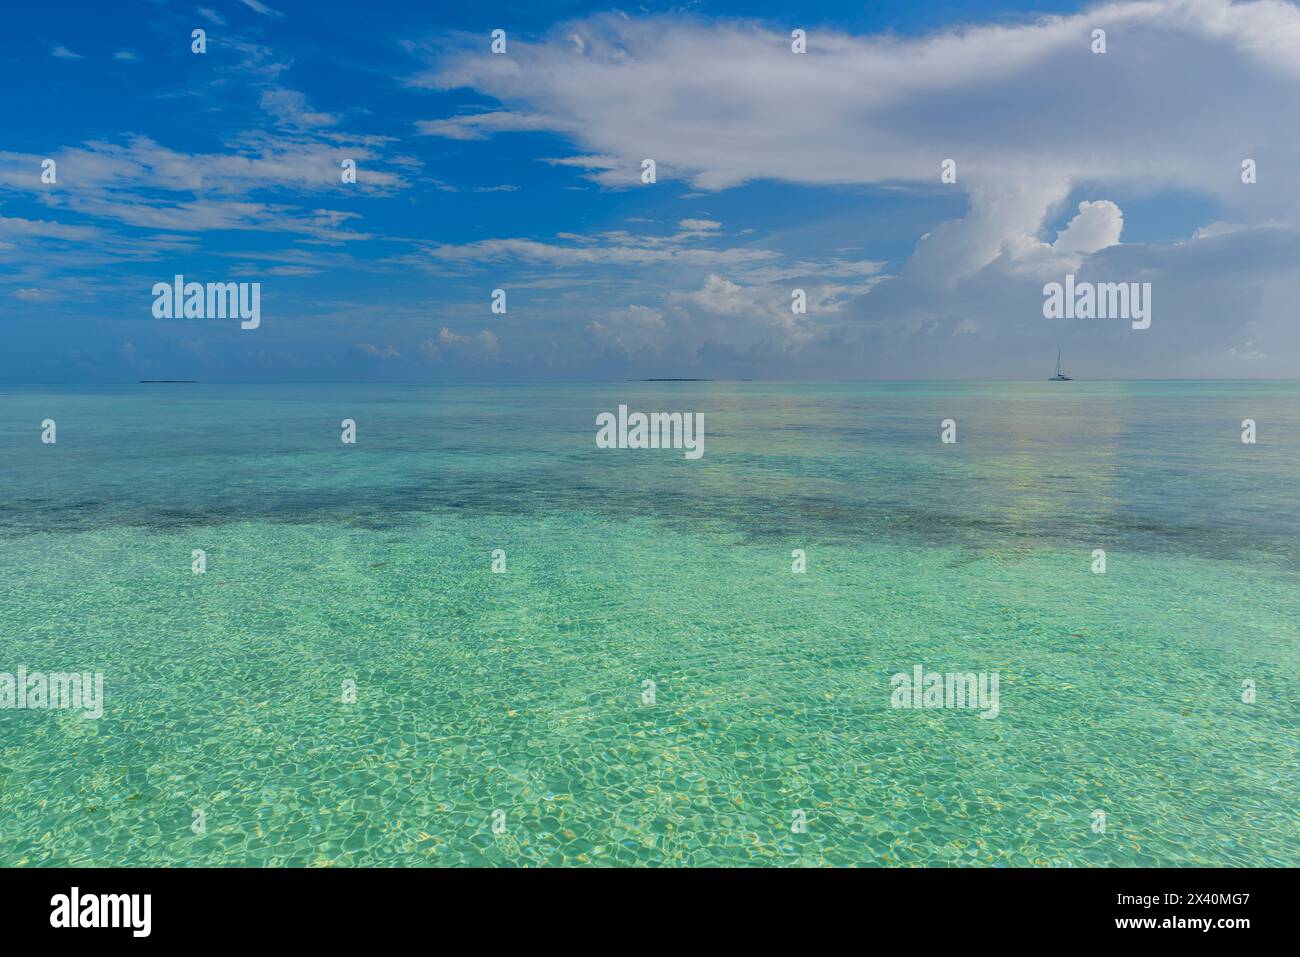 Vue sur l'eau turquoise au large de la plage d'une station balnéaire à Cayo Guillermo avec un bateau à l'horizon ; Cayo Guillermo, Jardines del Rey, Cuba Banque D'Images